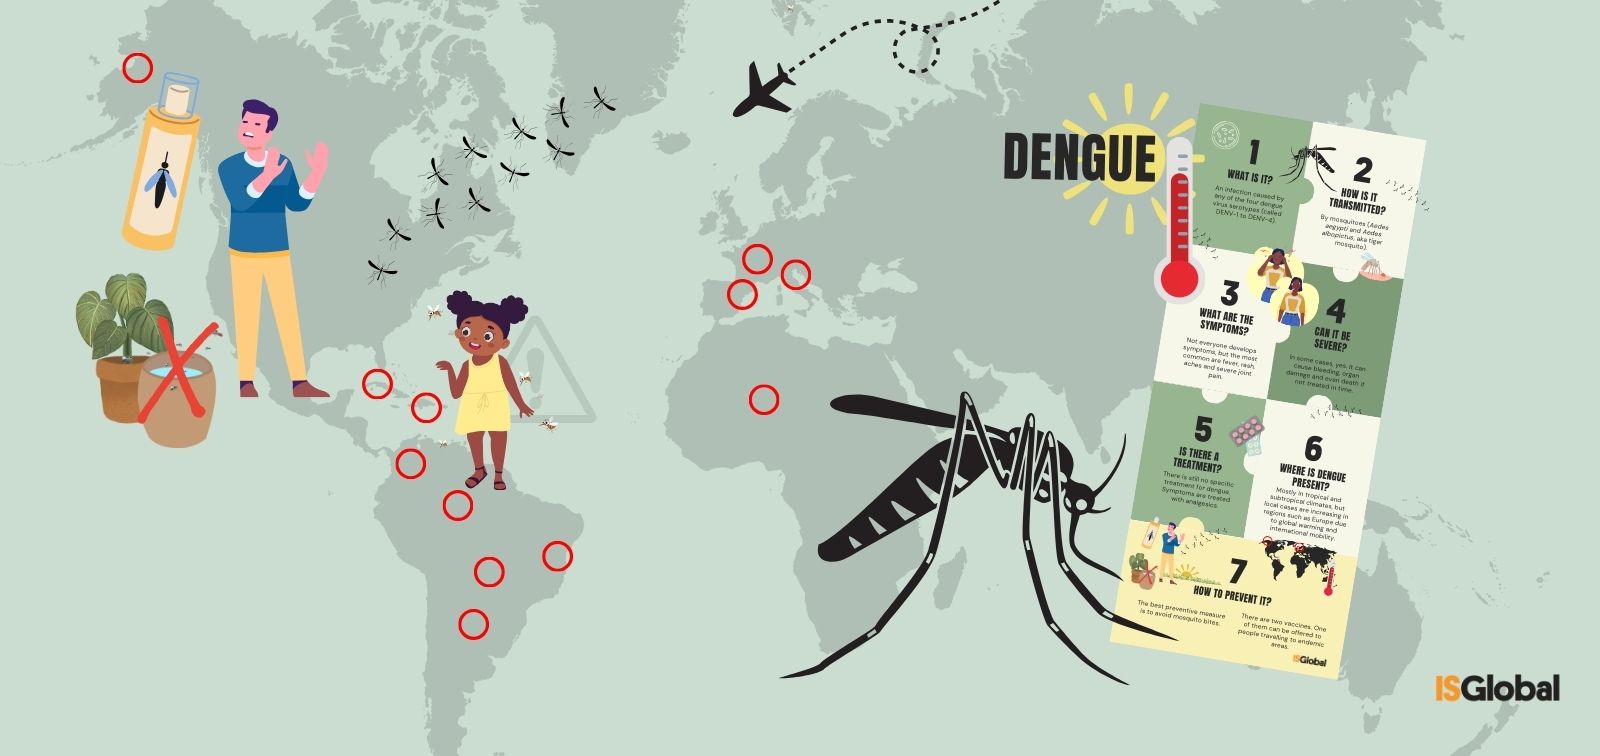 El dengue: una epidemia global explicada
